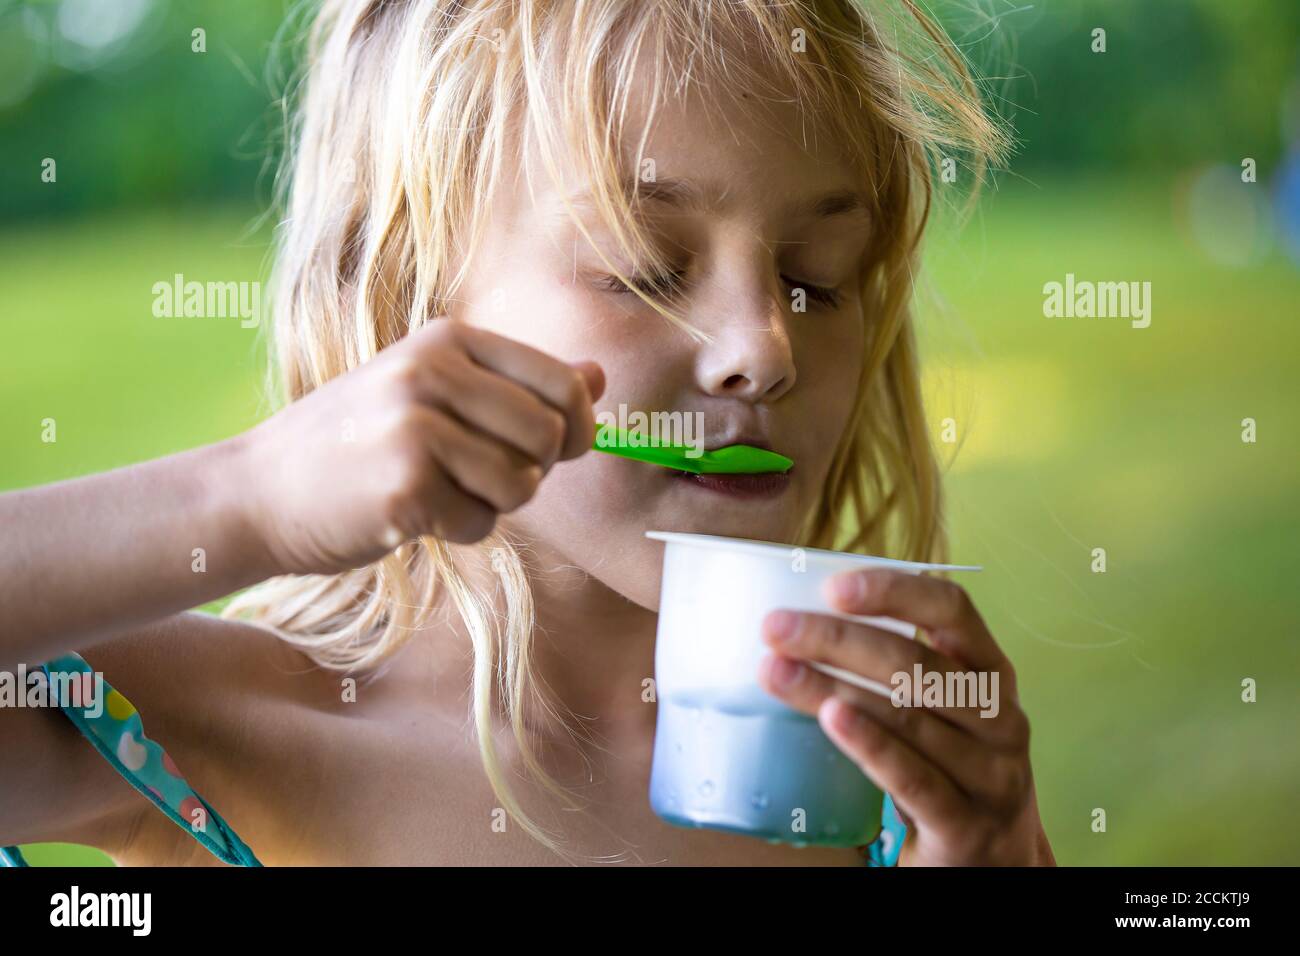 Chica rubia comiendo helado en una taza desechable Foto de stock